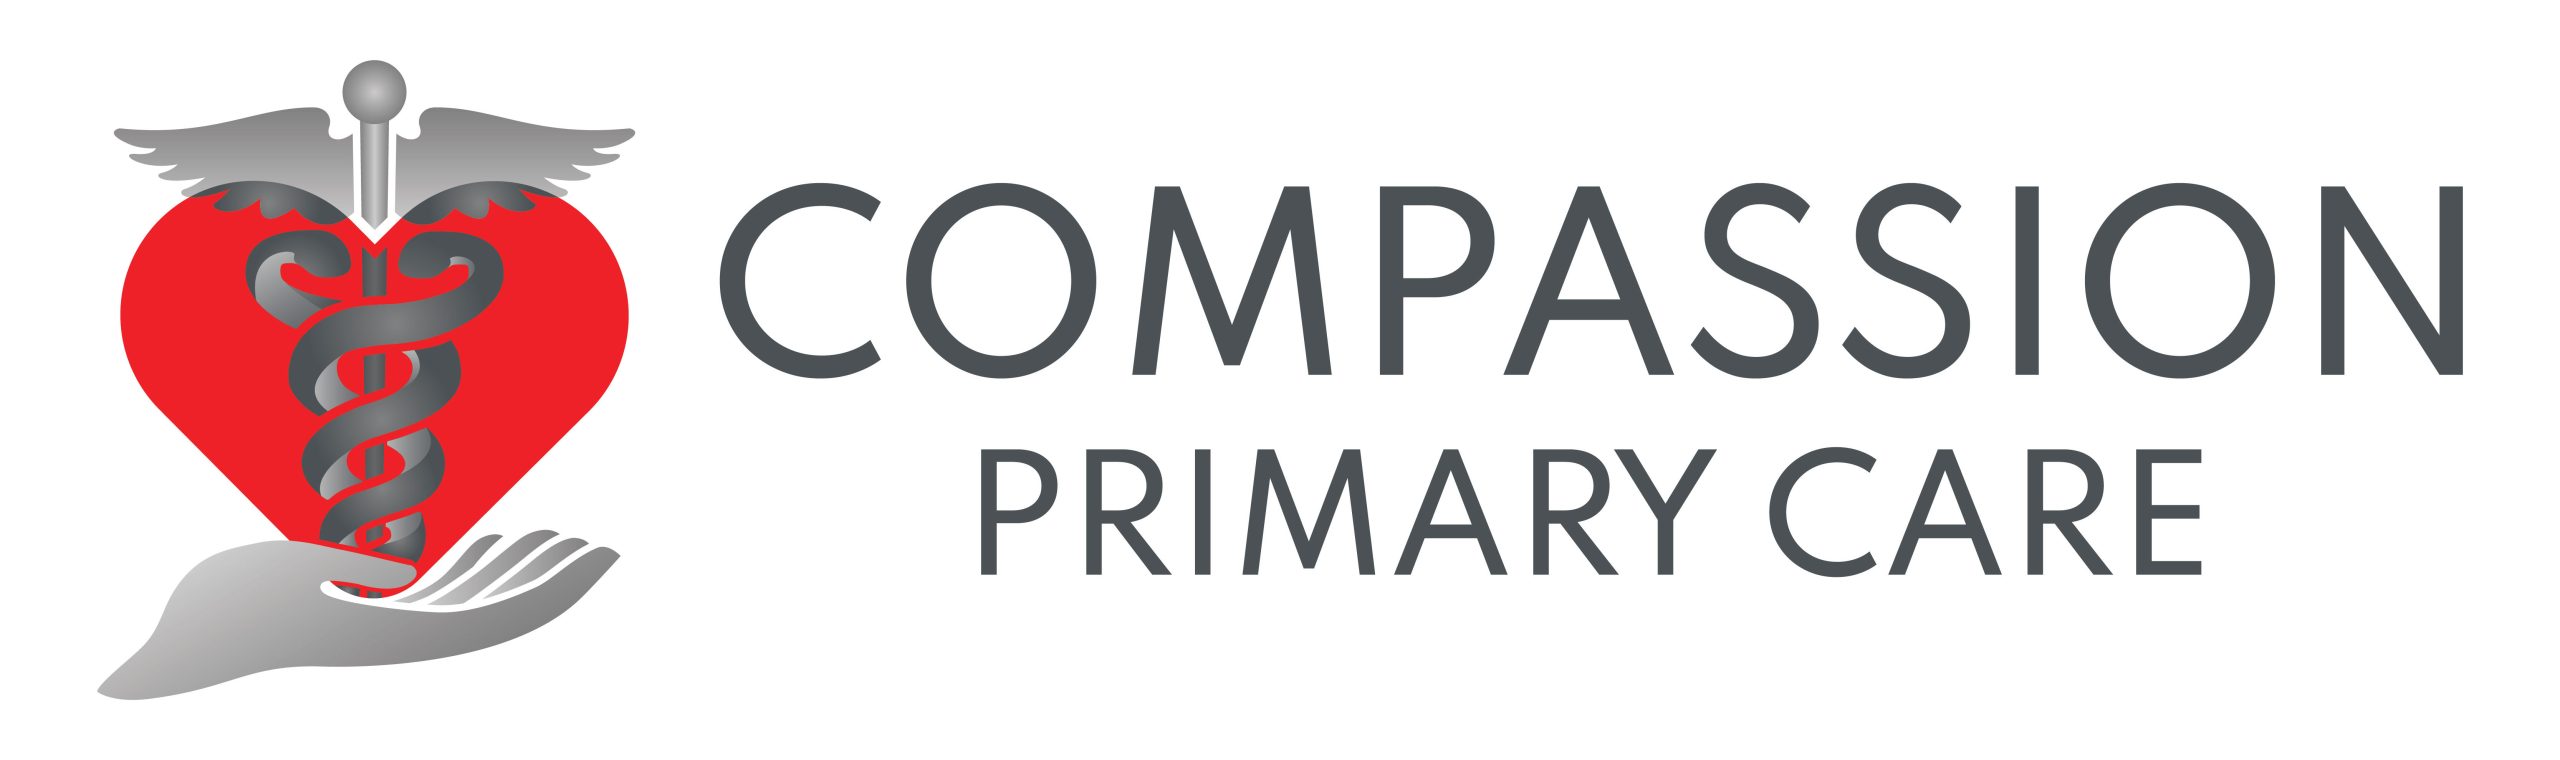 Compassion Primary Care